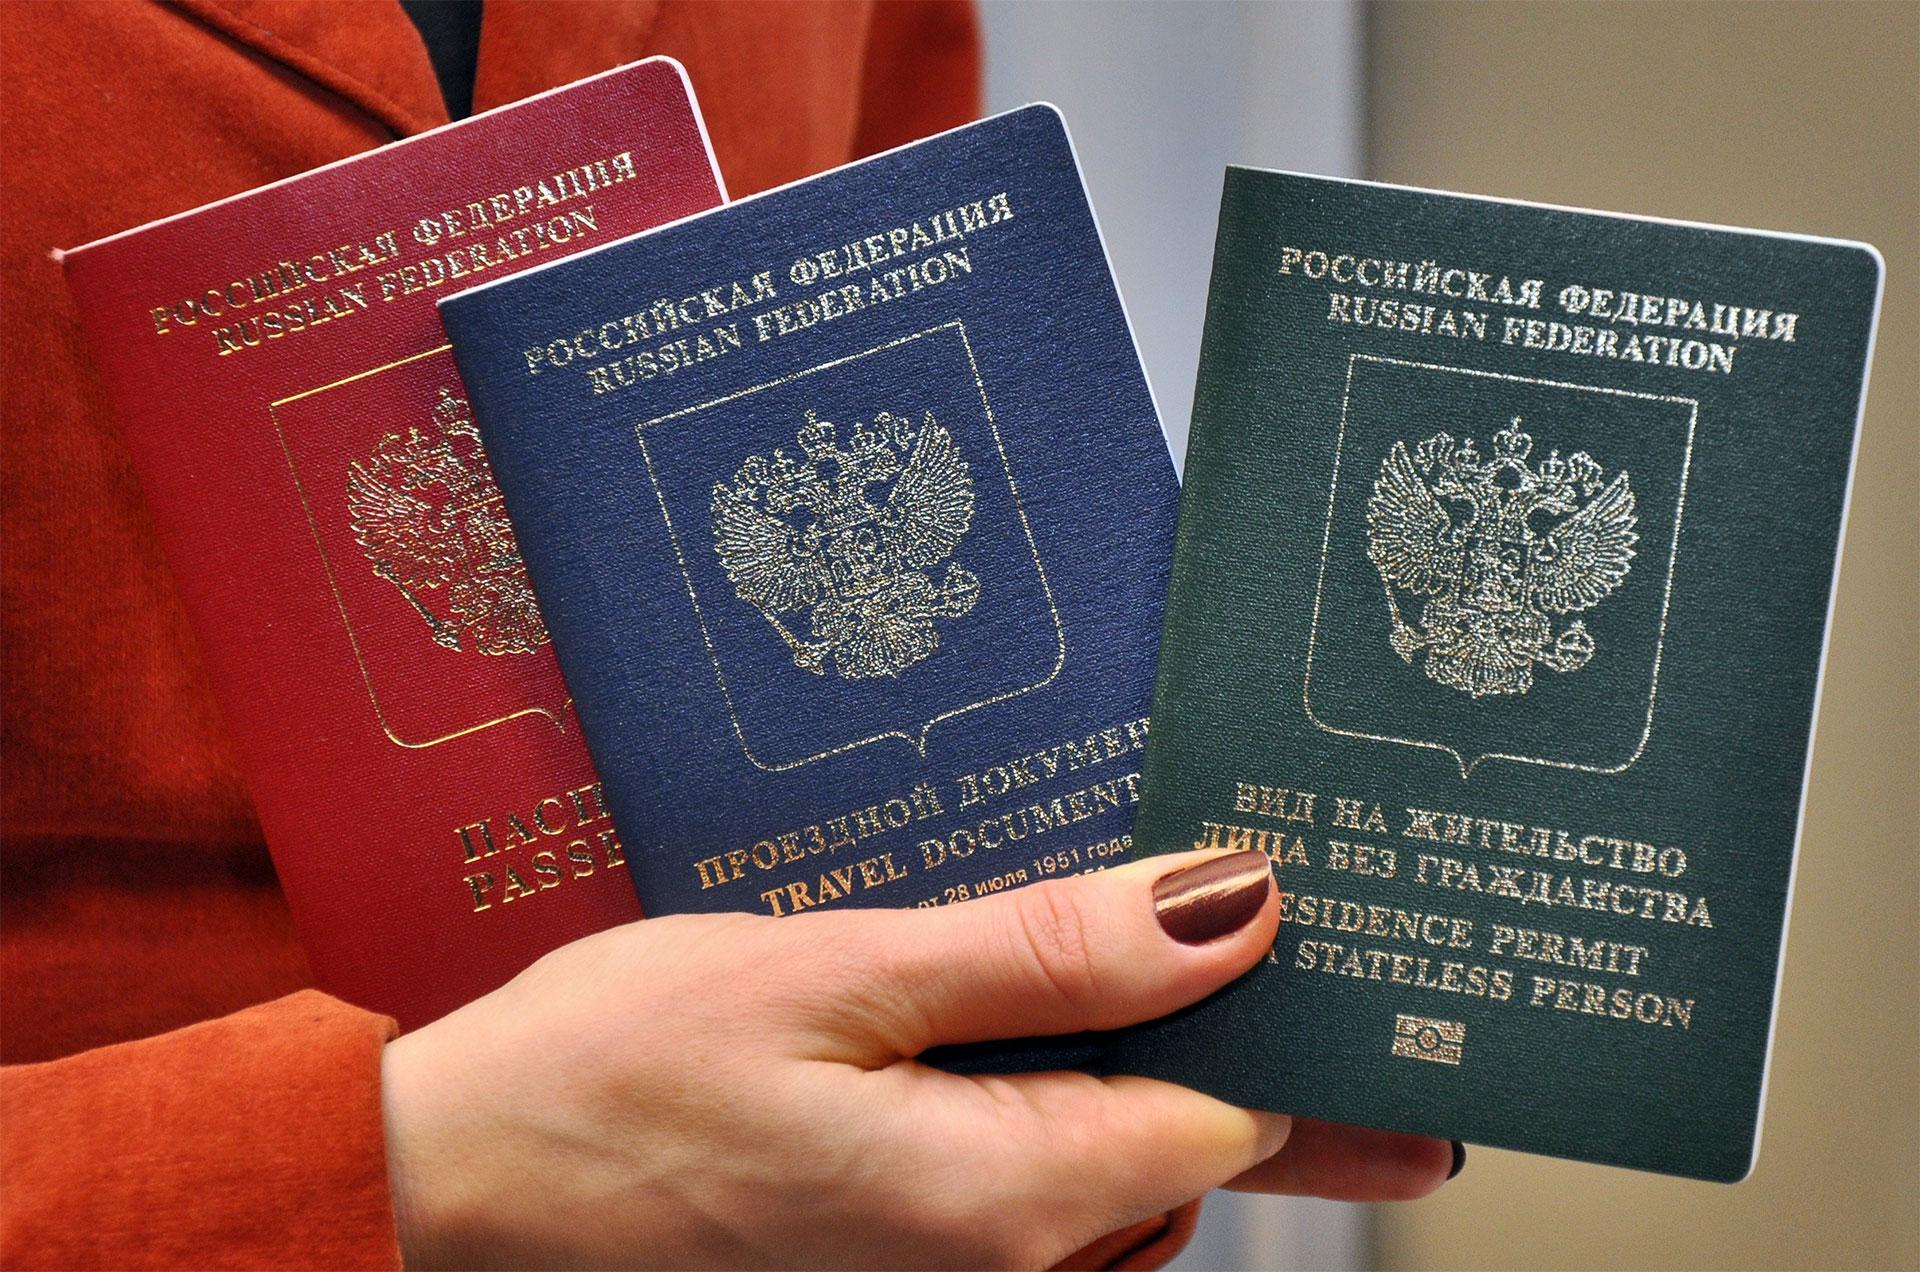 Получение гражданства австрии для россиян в 2020 году — изменения, новости